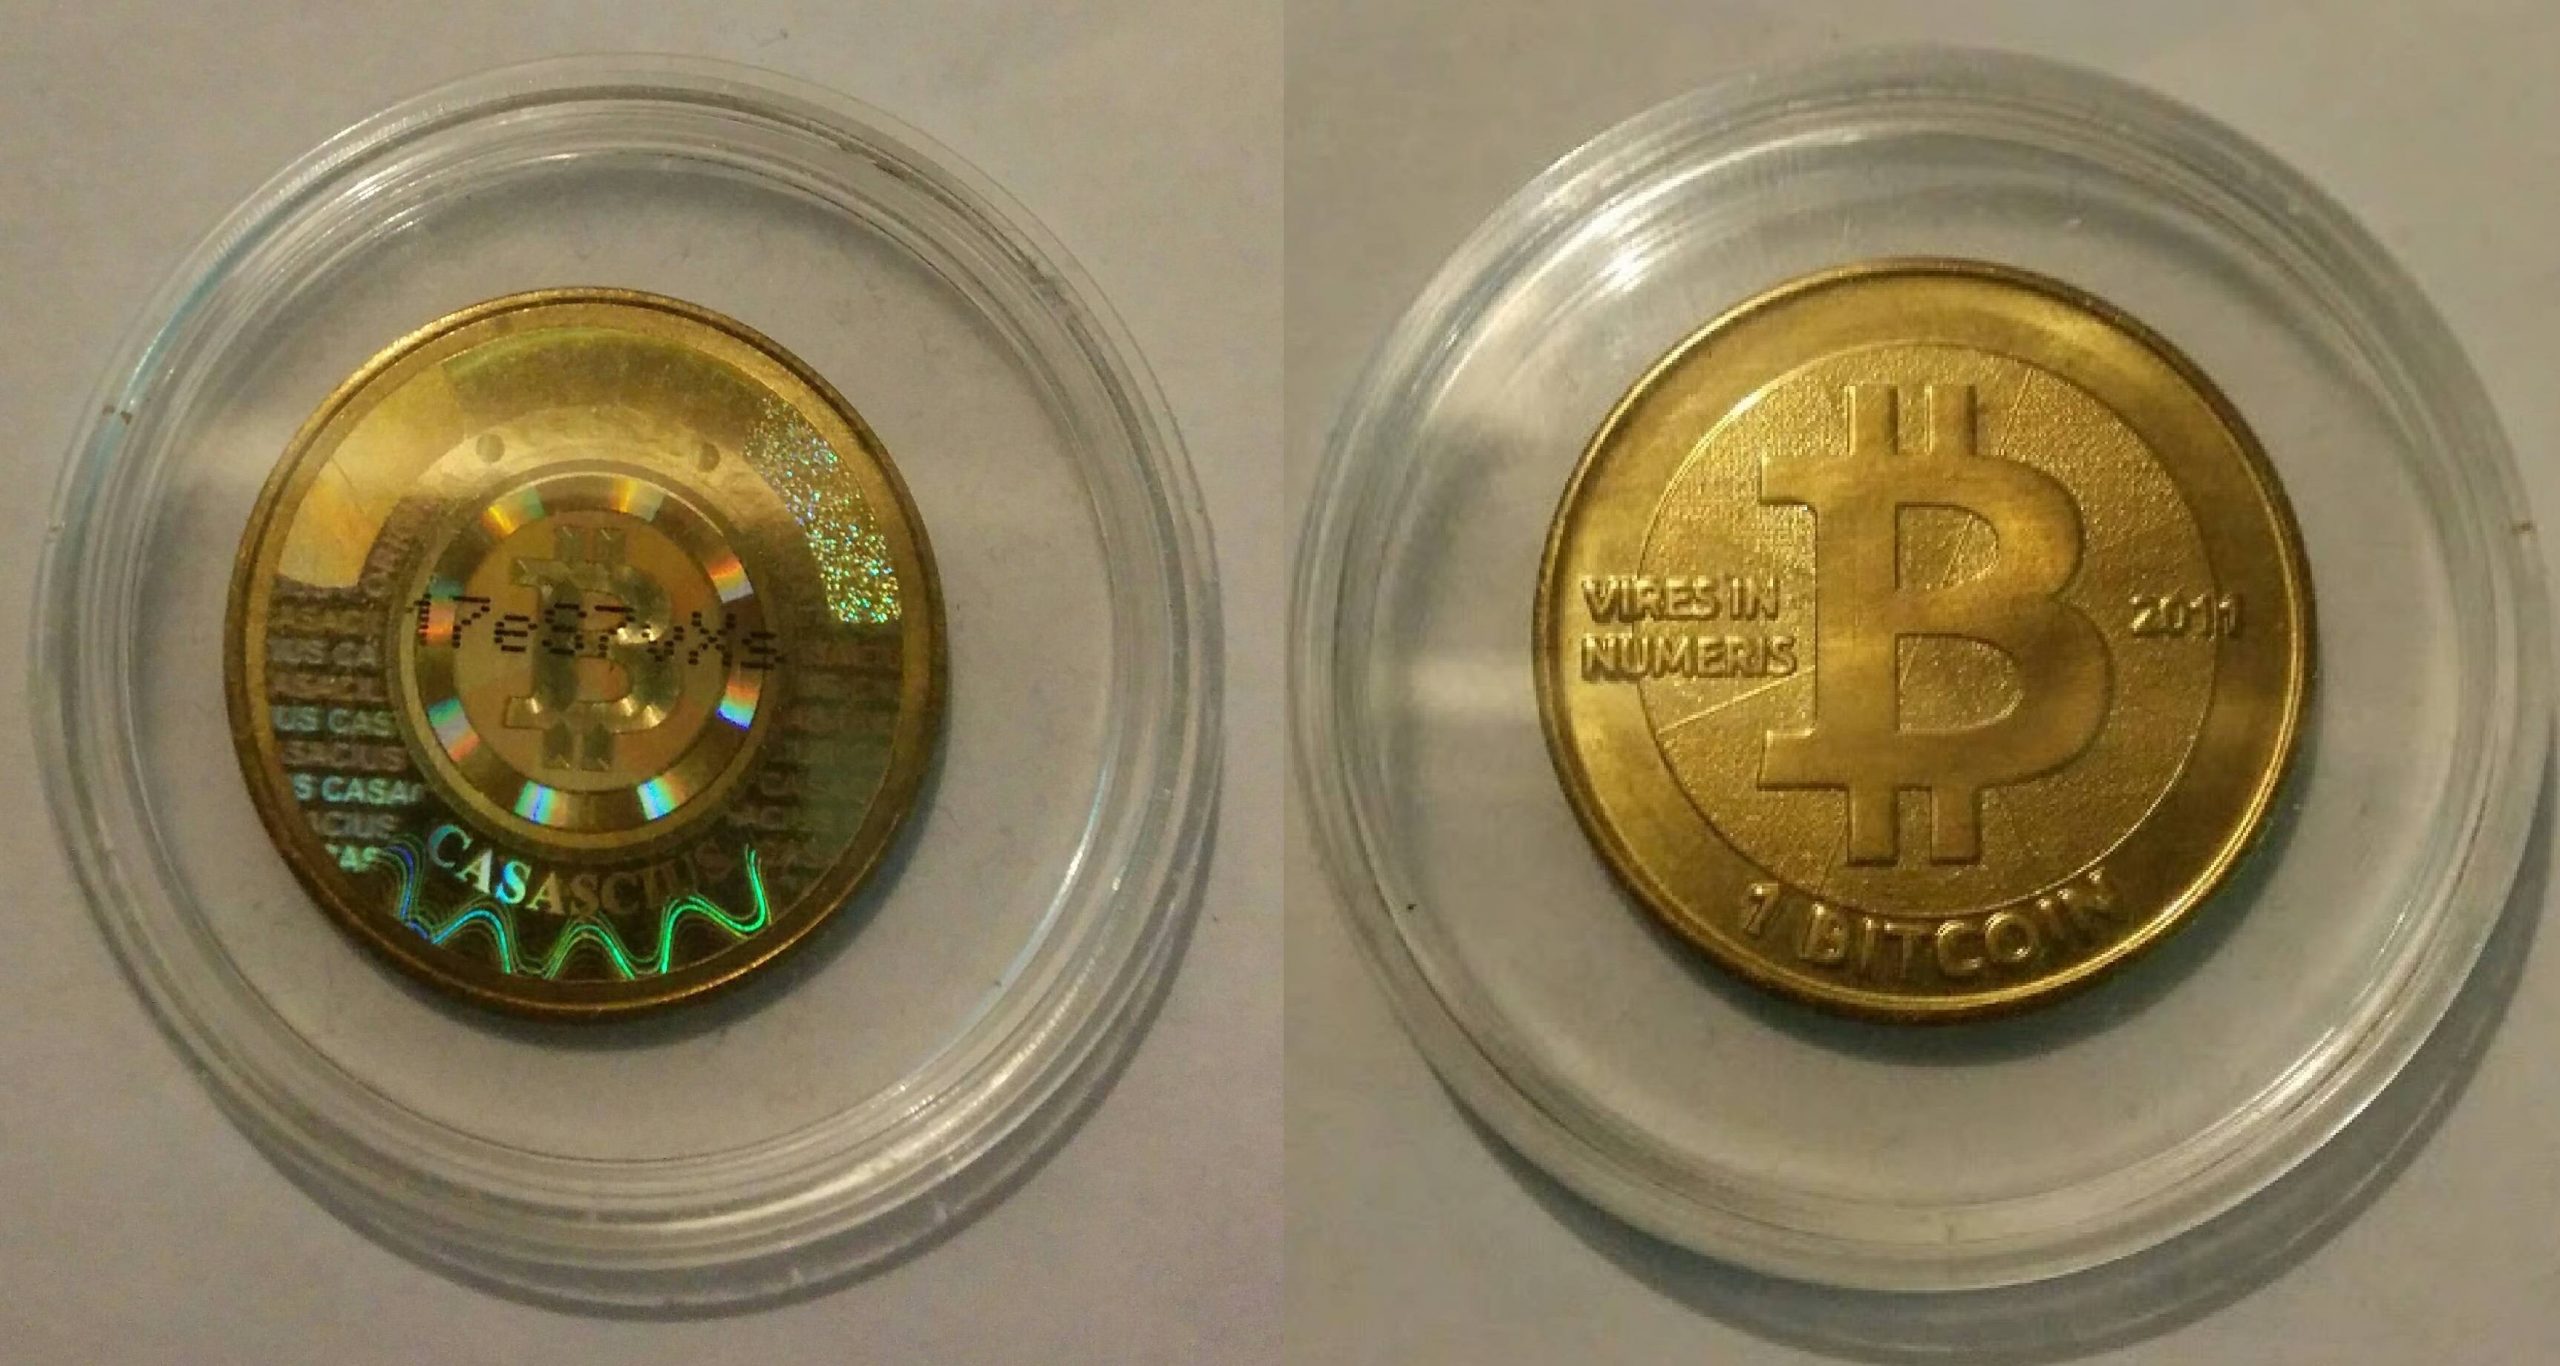 bitcoin exchange chart